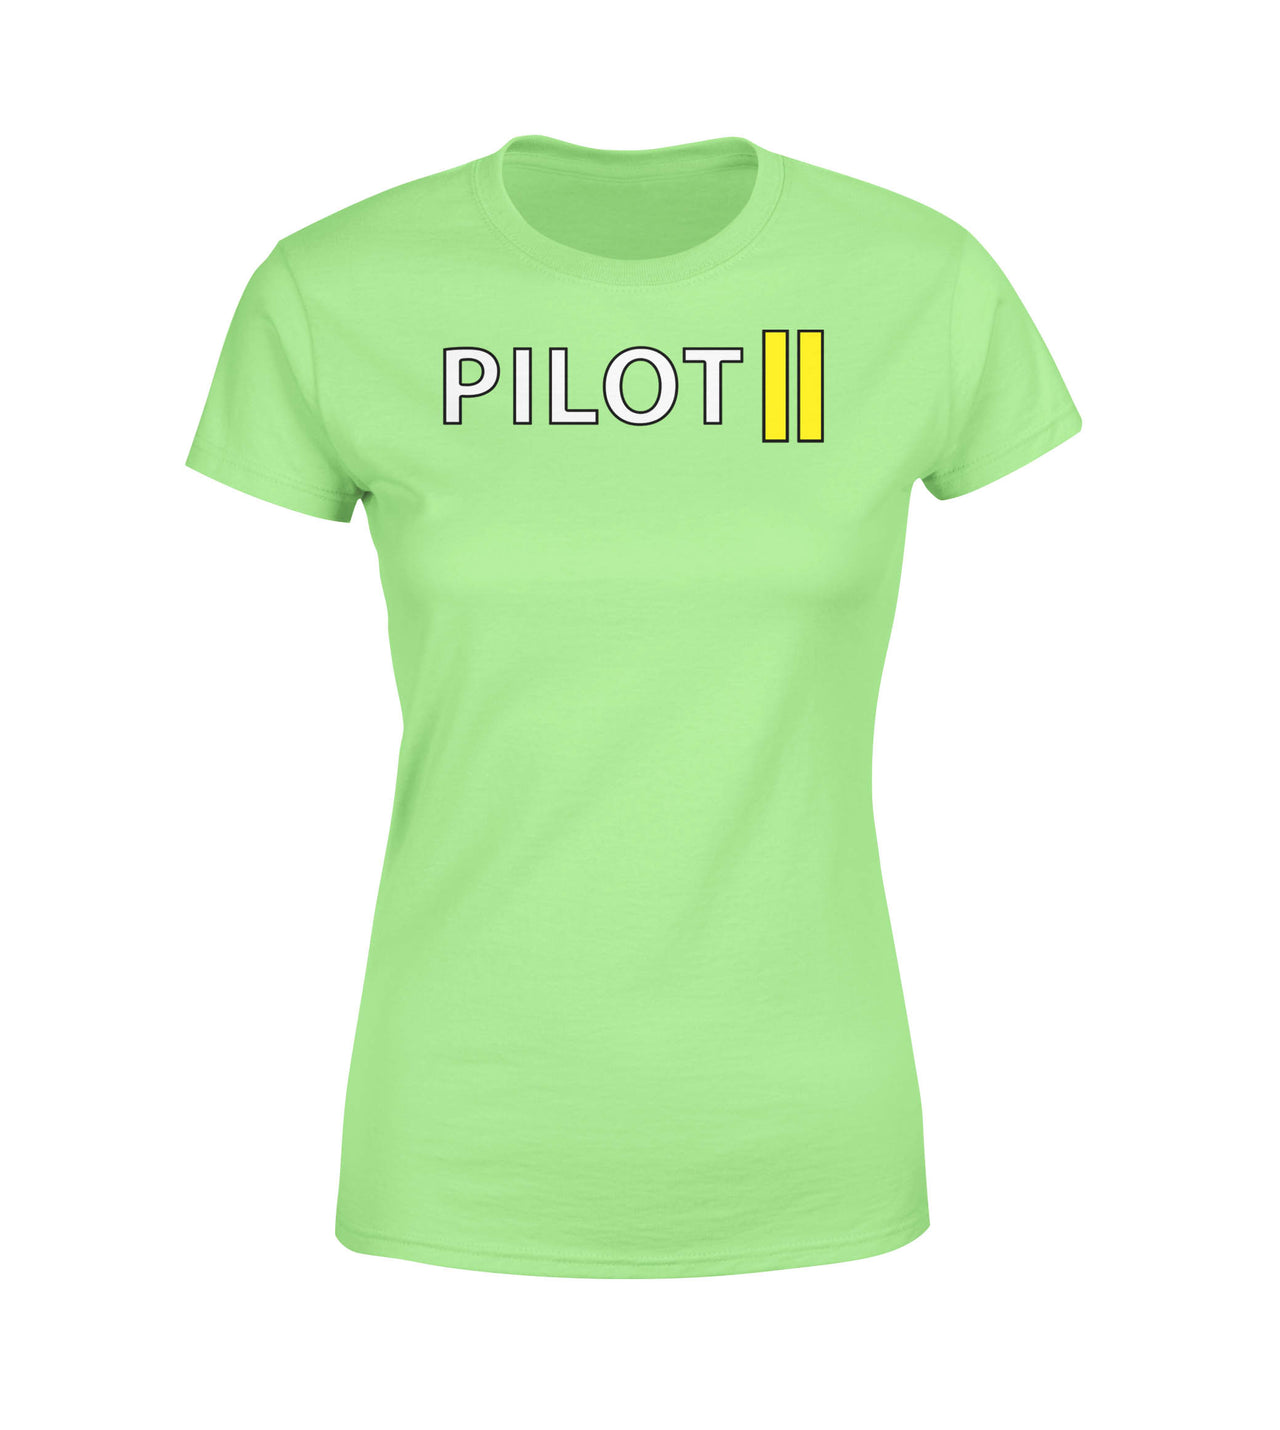 Pilot & Stripes (2 Lines) Designed Women T-Shirts